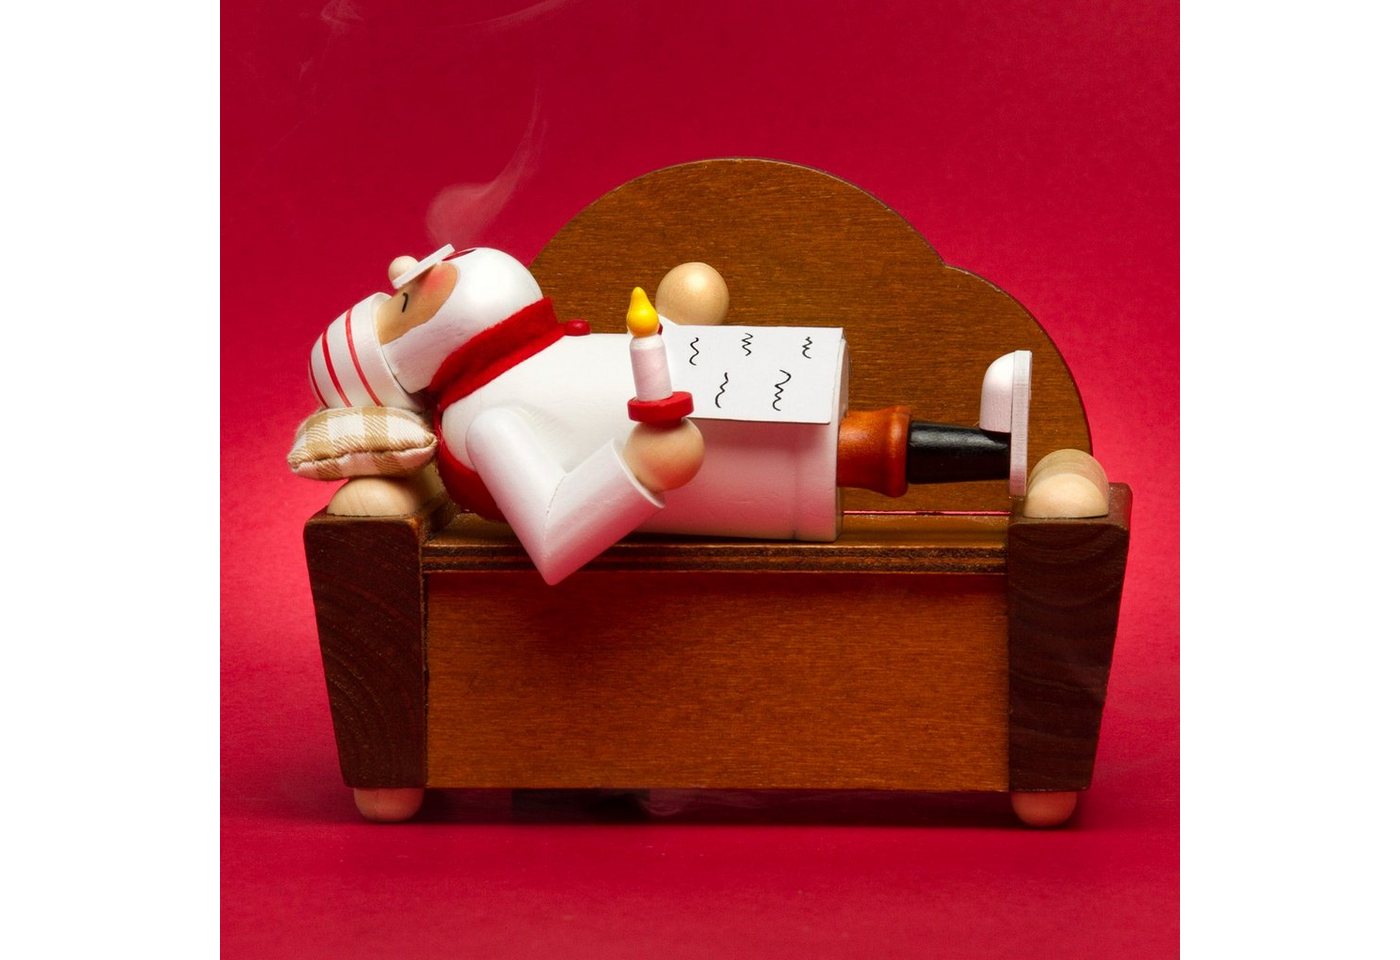 SIKORA Weihnachtsfigur SIKORA RM-A-SOFA schlafendes Holz Räuchermännchen auf dem Sofa - 3 Modelle von SIKORA